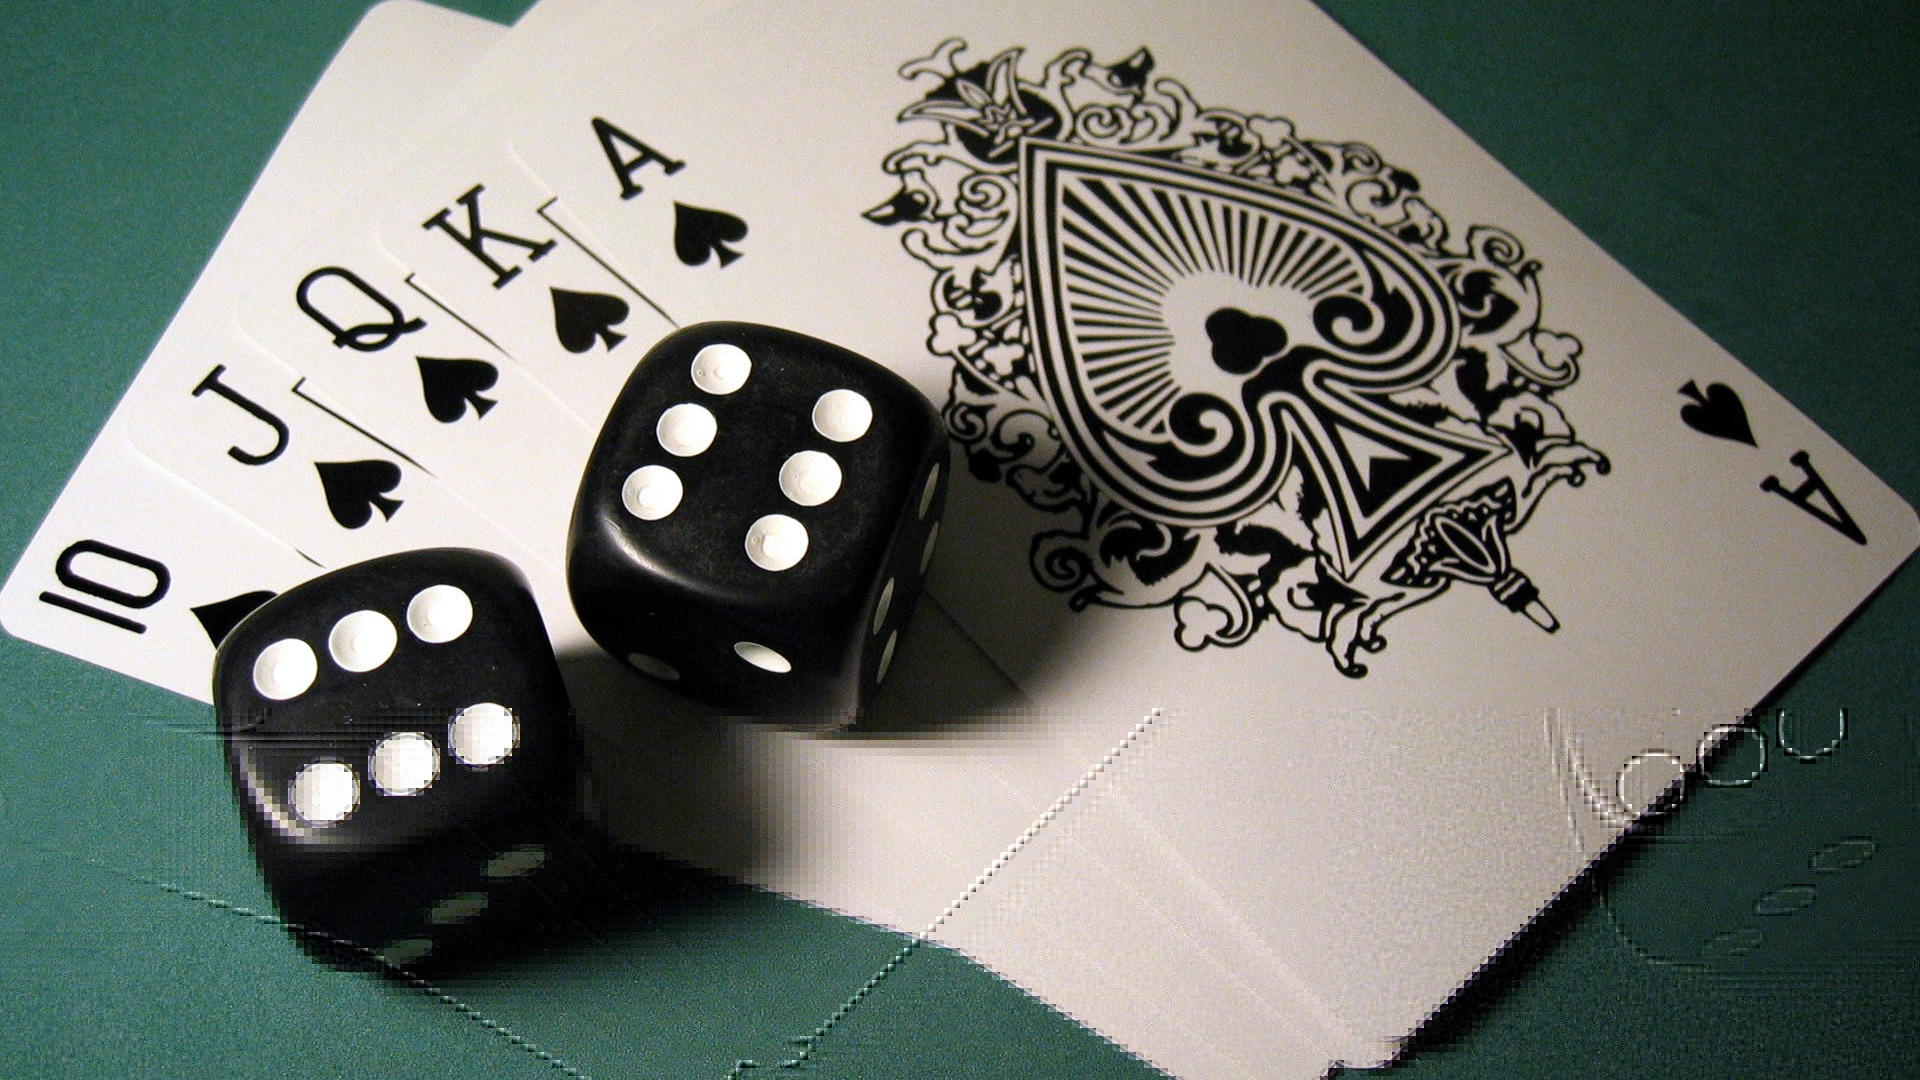 турнирный покер, стратегия покера, онлайн-покер